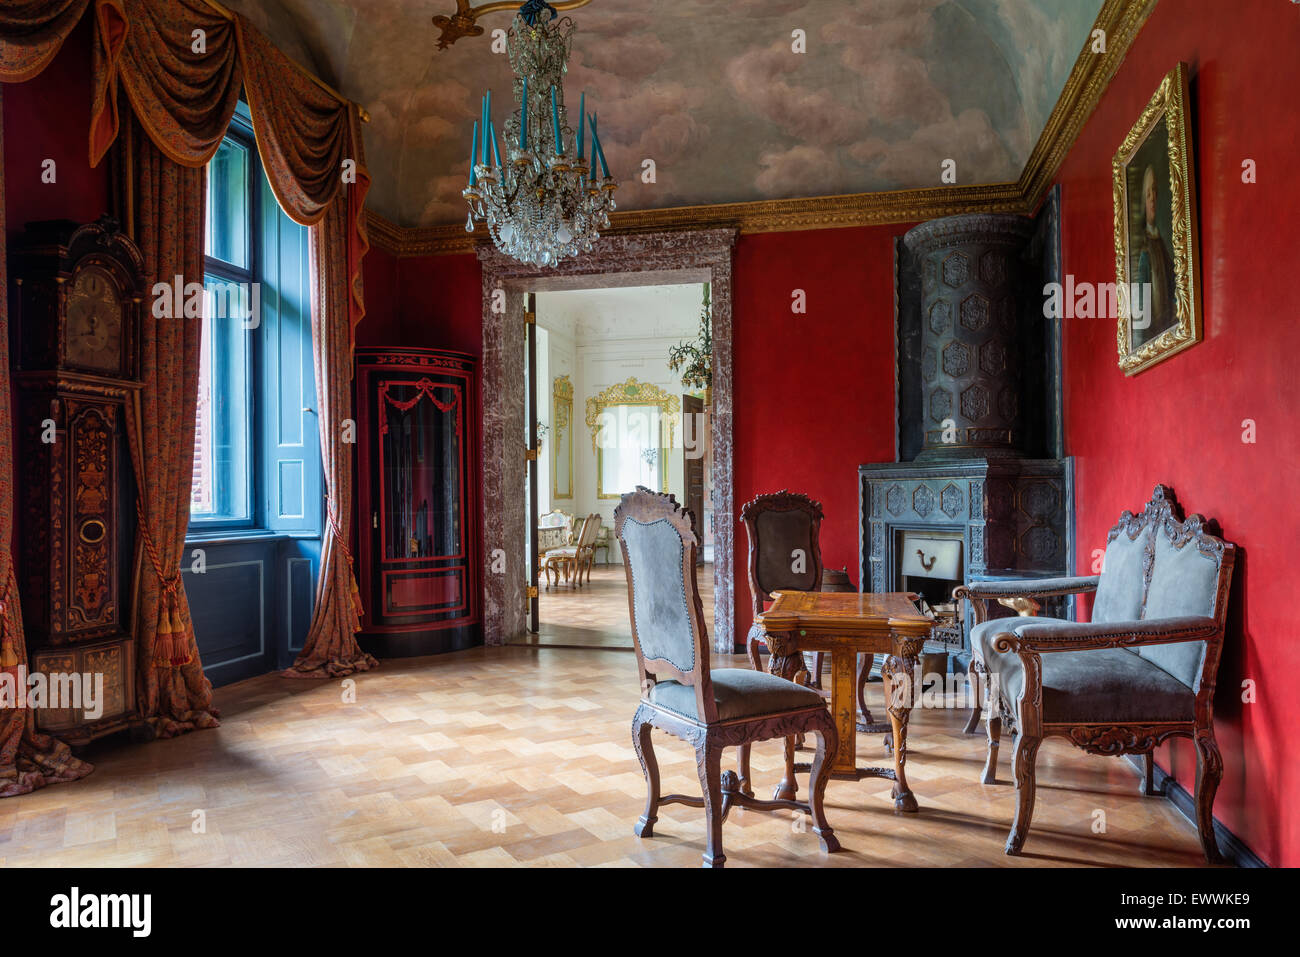 Cheminée Renaissance dans la salle seigneuriale avec un plafond voûté, de parquet et de meubles anciens Banque D'Images